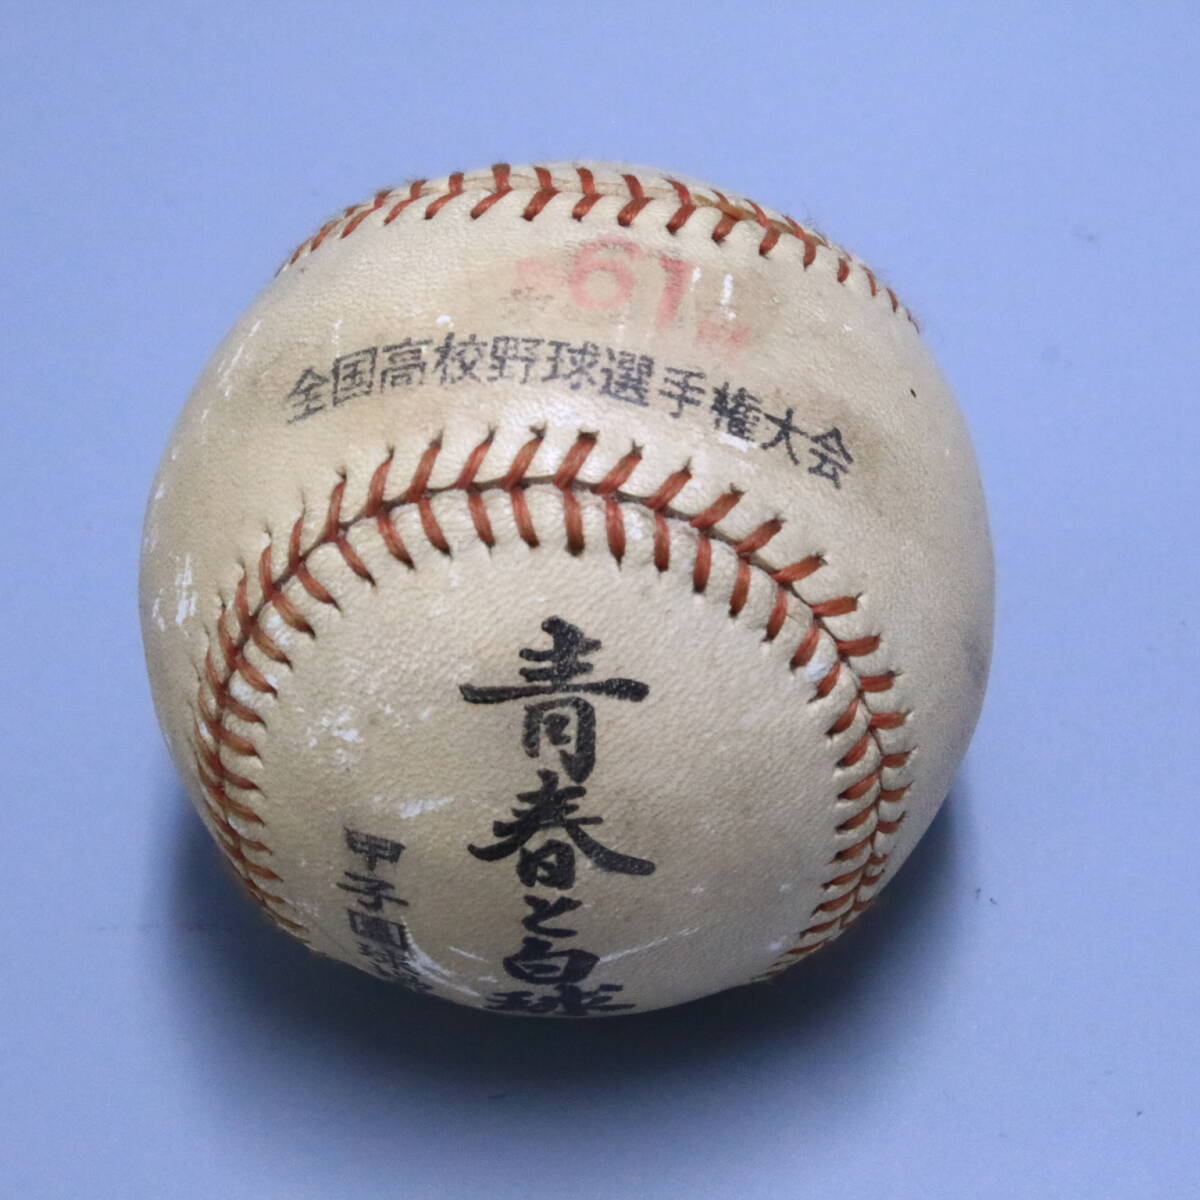 あ//A7194 Cardinals MLB 野球ボール(ケース入り)2個/野球 日本選手 サイン入り野球ボール6個/その他1個  合計9個の画像9